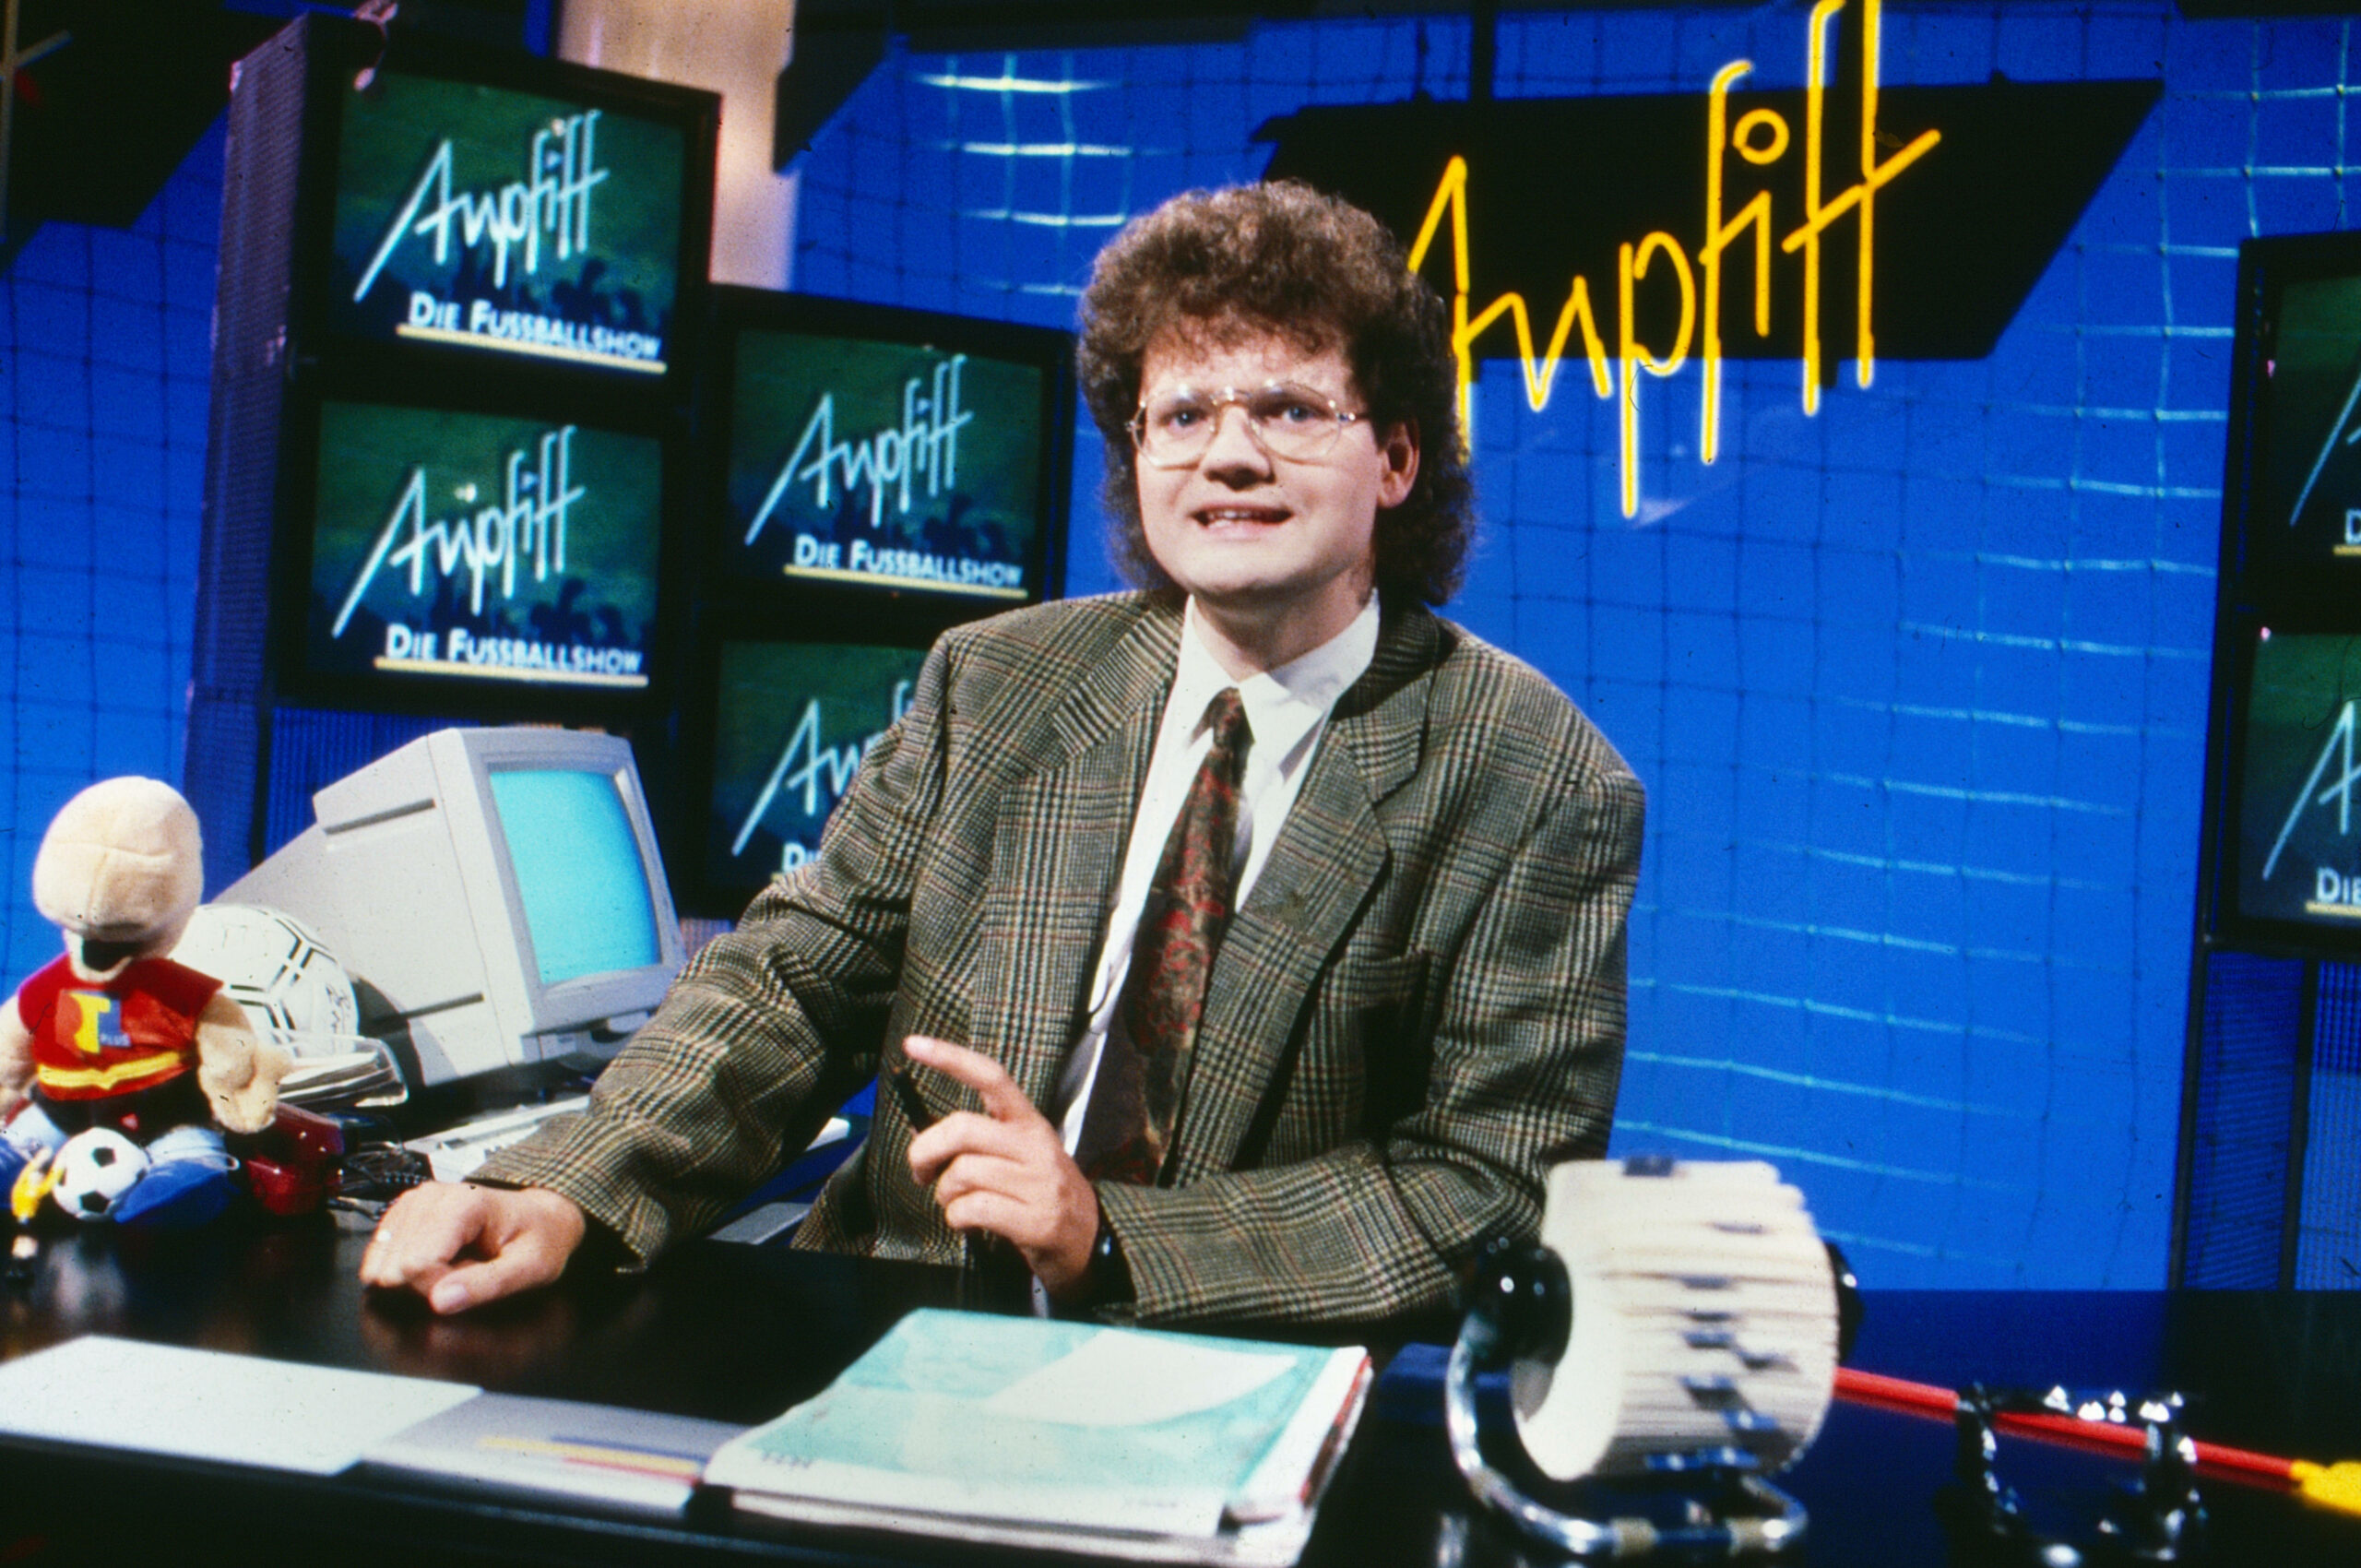 Ulli Potofski sitzt in der Kulisse der RTL plus-Fußball-Bundesliga-Sendung „Anpfiff“. Im Hintergrund stehen Bildschirme und ein Computer. (Archivbild von 1988)